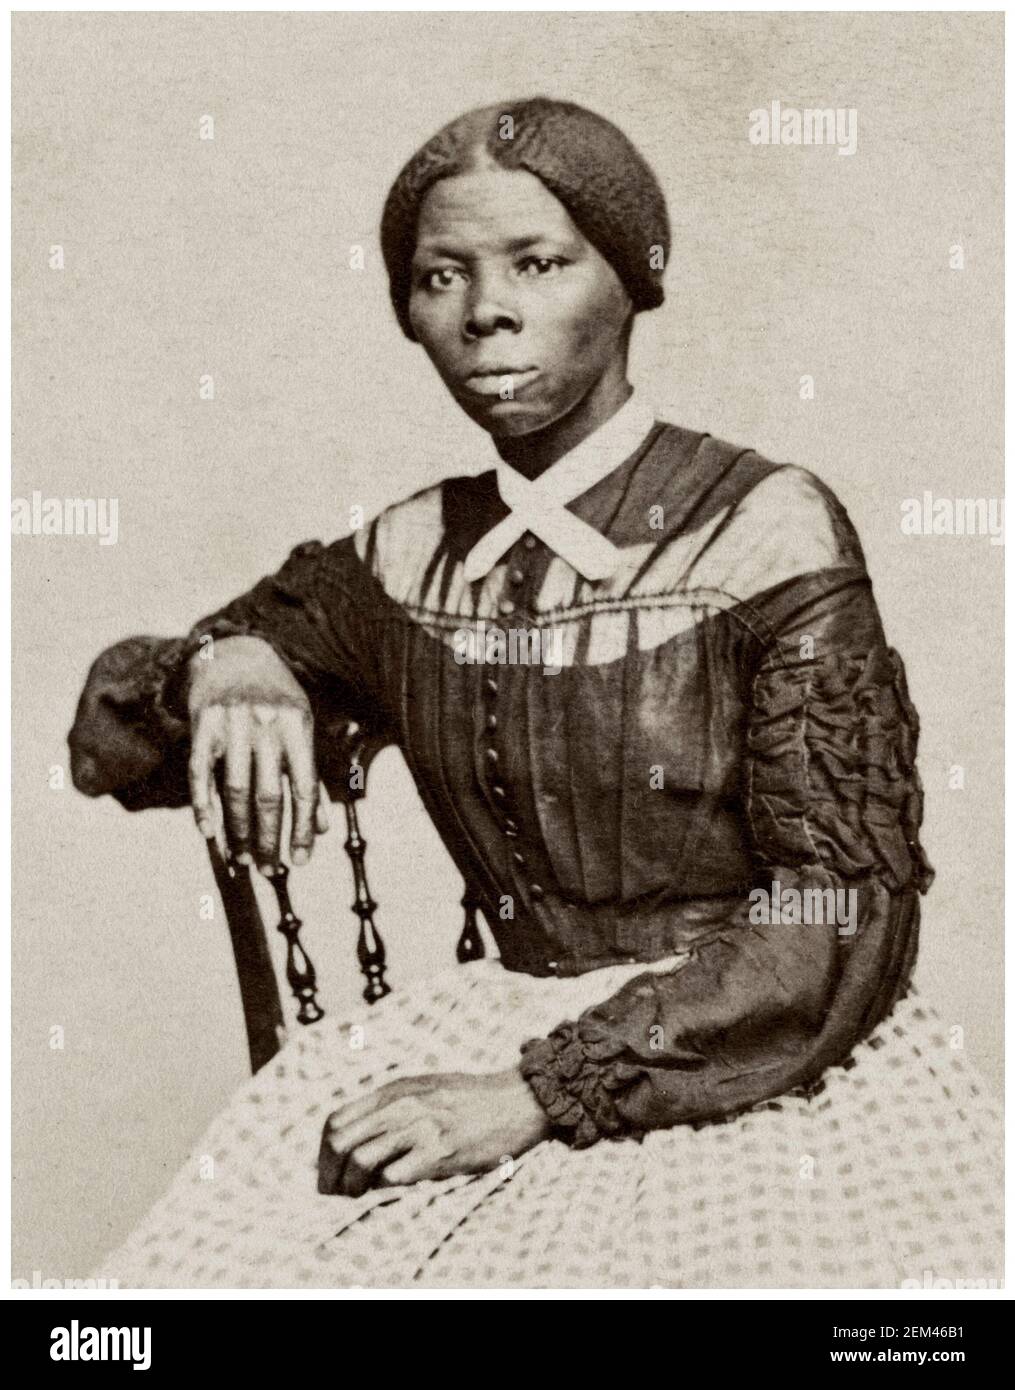 Carte-de-visite portrait de l'Abolitionniste Harriet Tubman des États-Unis (1820-1913), détail, photographie de Benjamin F Powelson, 1868-1869 Banque D'Images